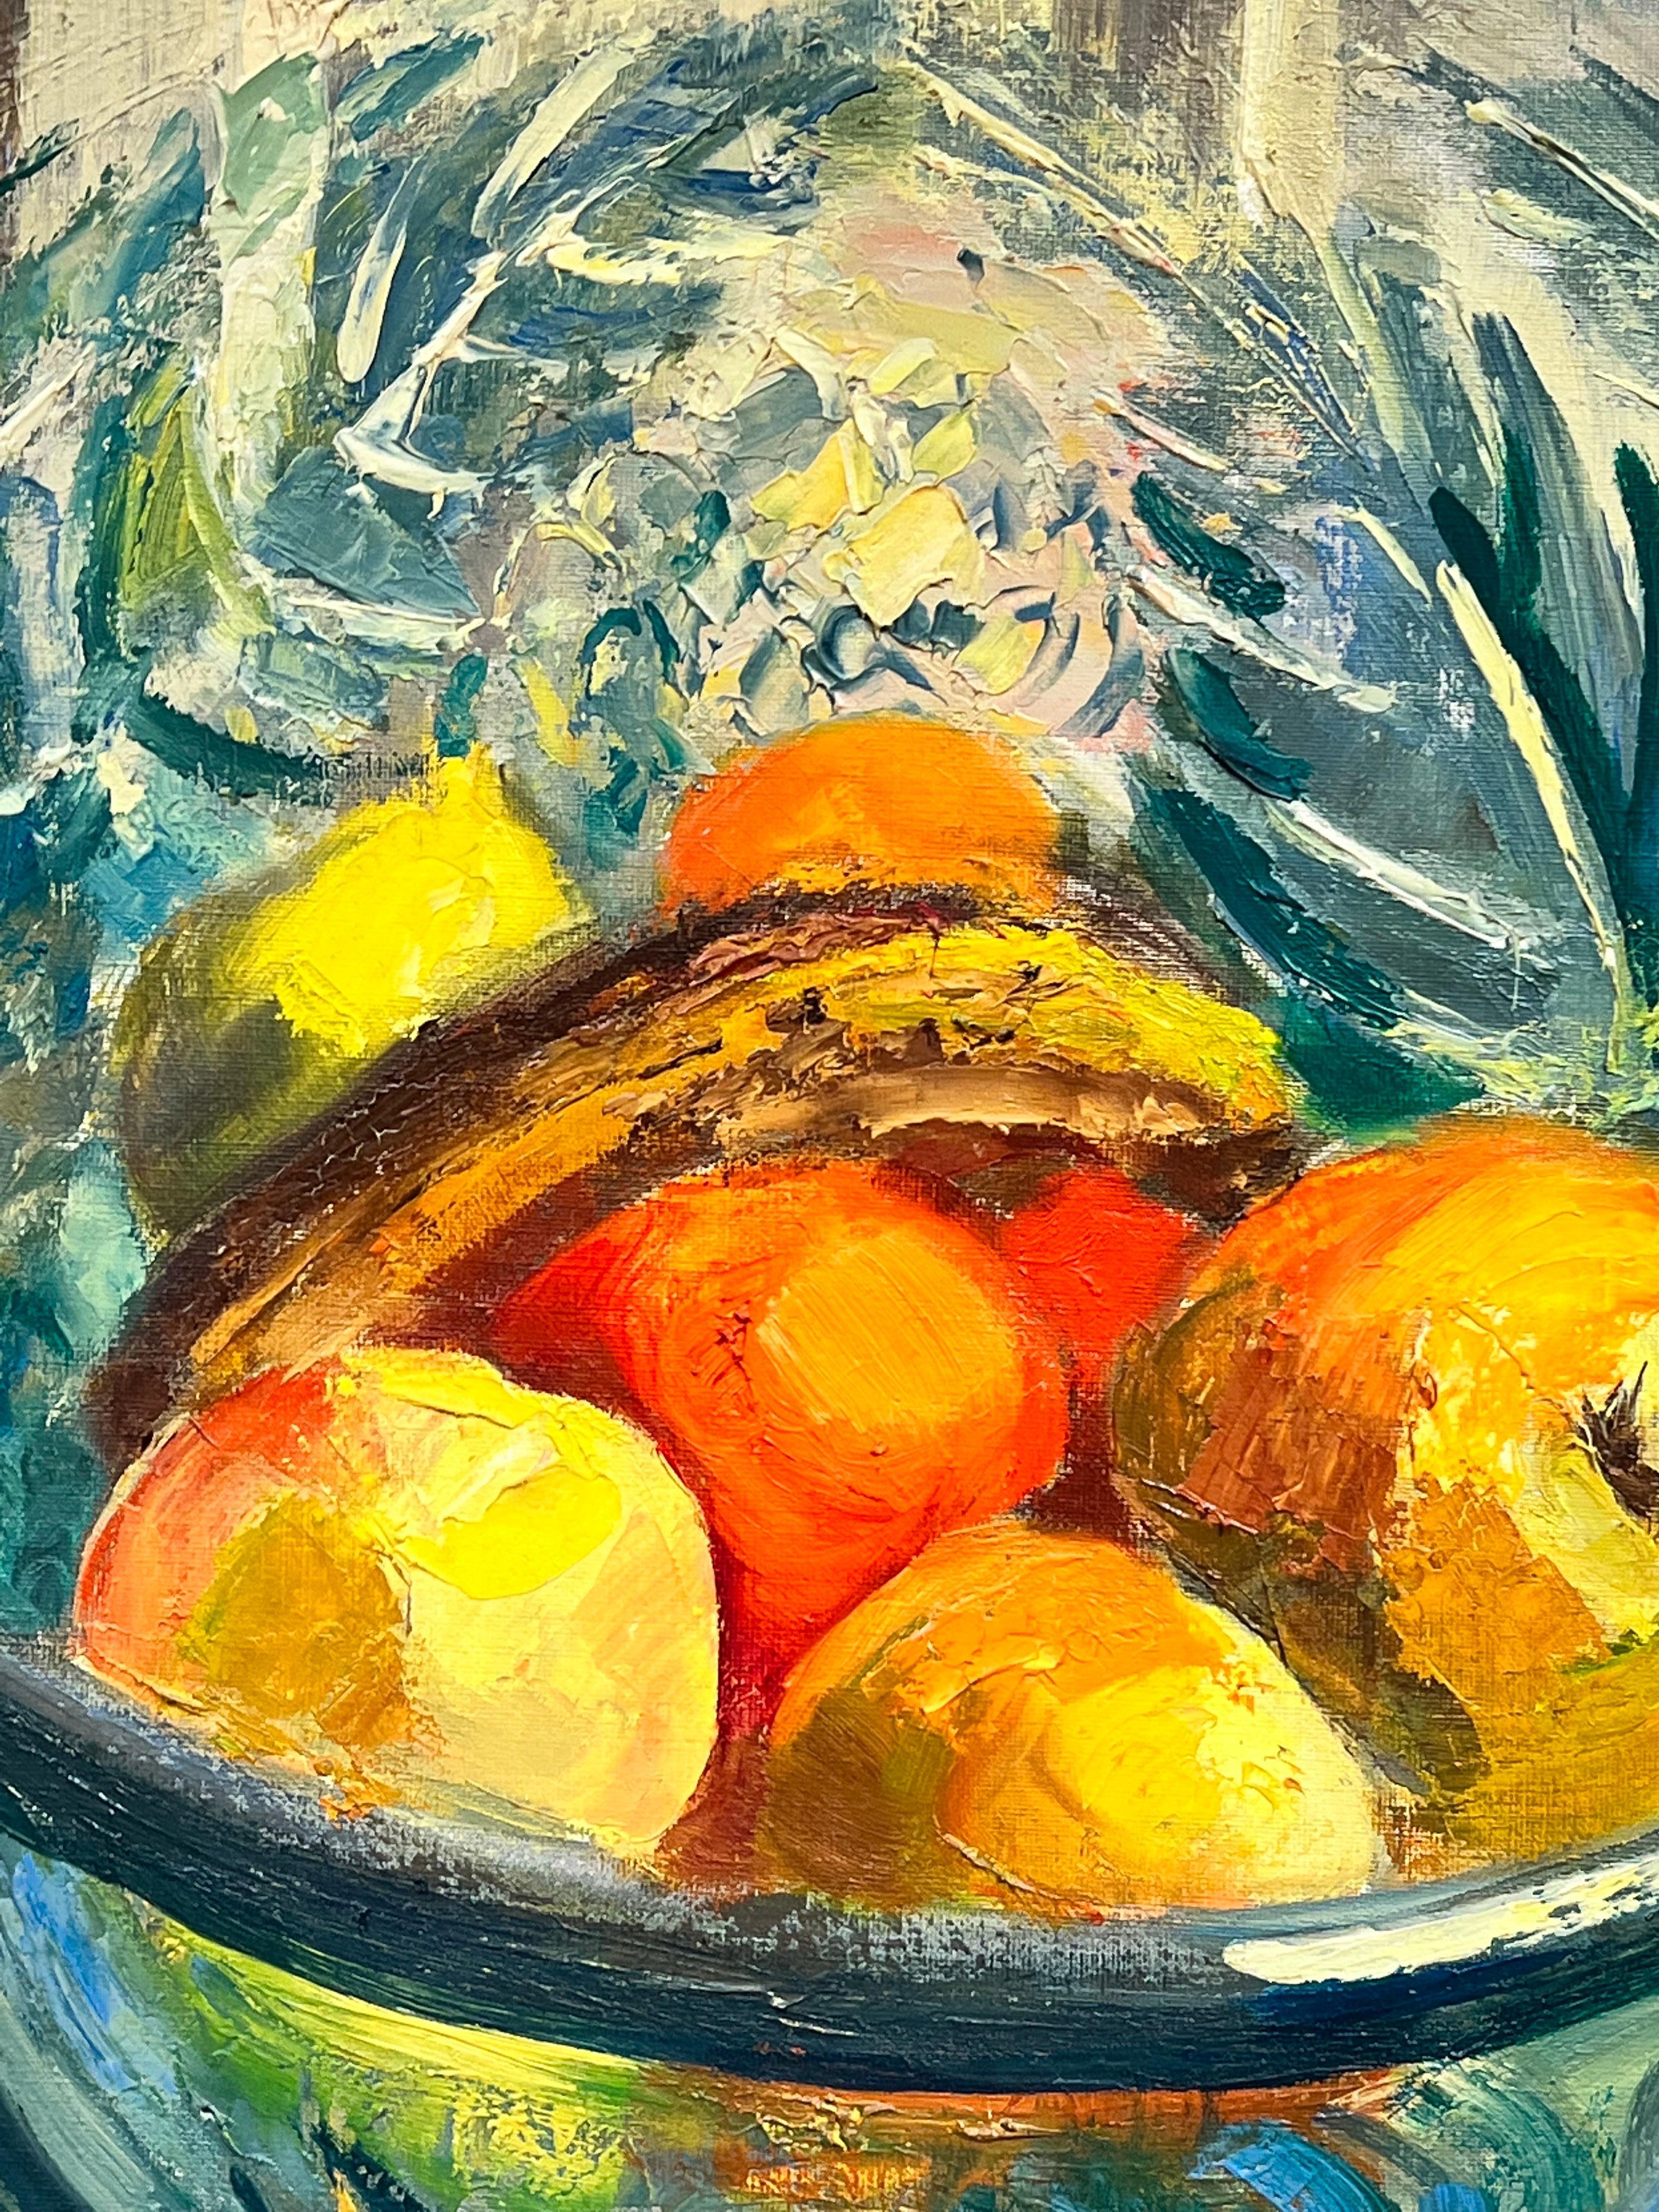 La coupe de fruits
par Josine Vignon (française 1922-2022)
signé 
peinture à l'huile sur toile, encadrée
encadré : 39 x 32 pouces
toile : 32 x 36 pouces

Couleurs : Couleurs vertes, jaune, bleu, orange 
et rouge

Très bon état. Le cadre est